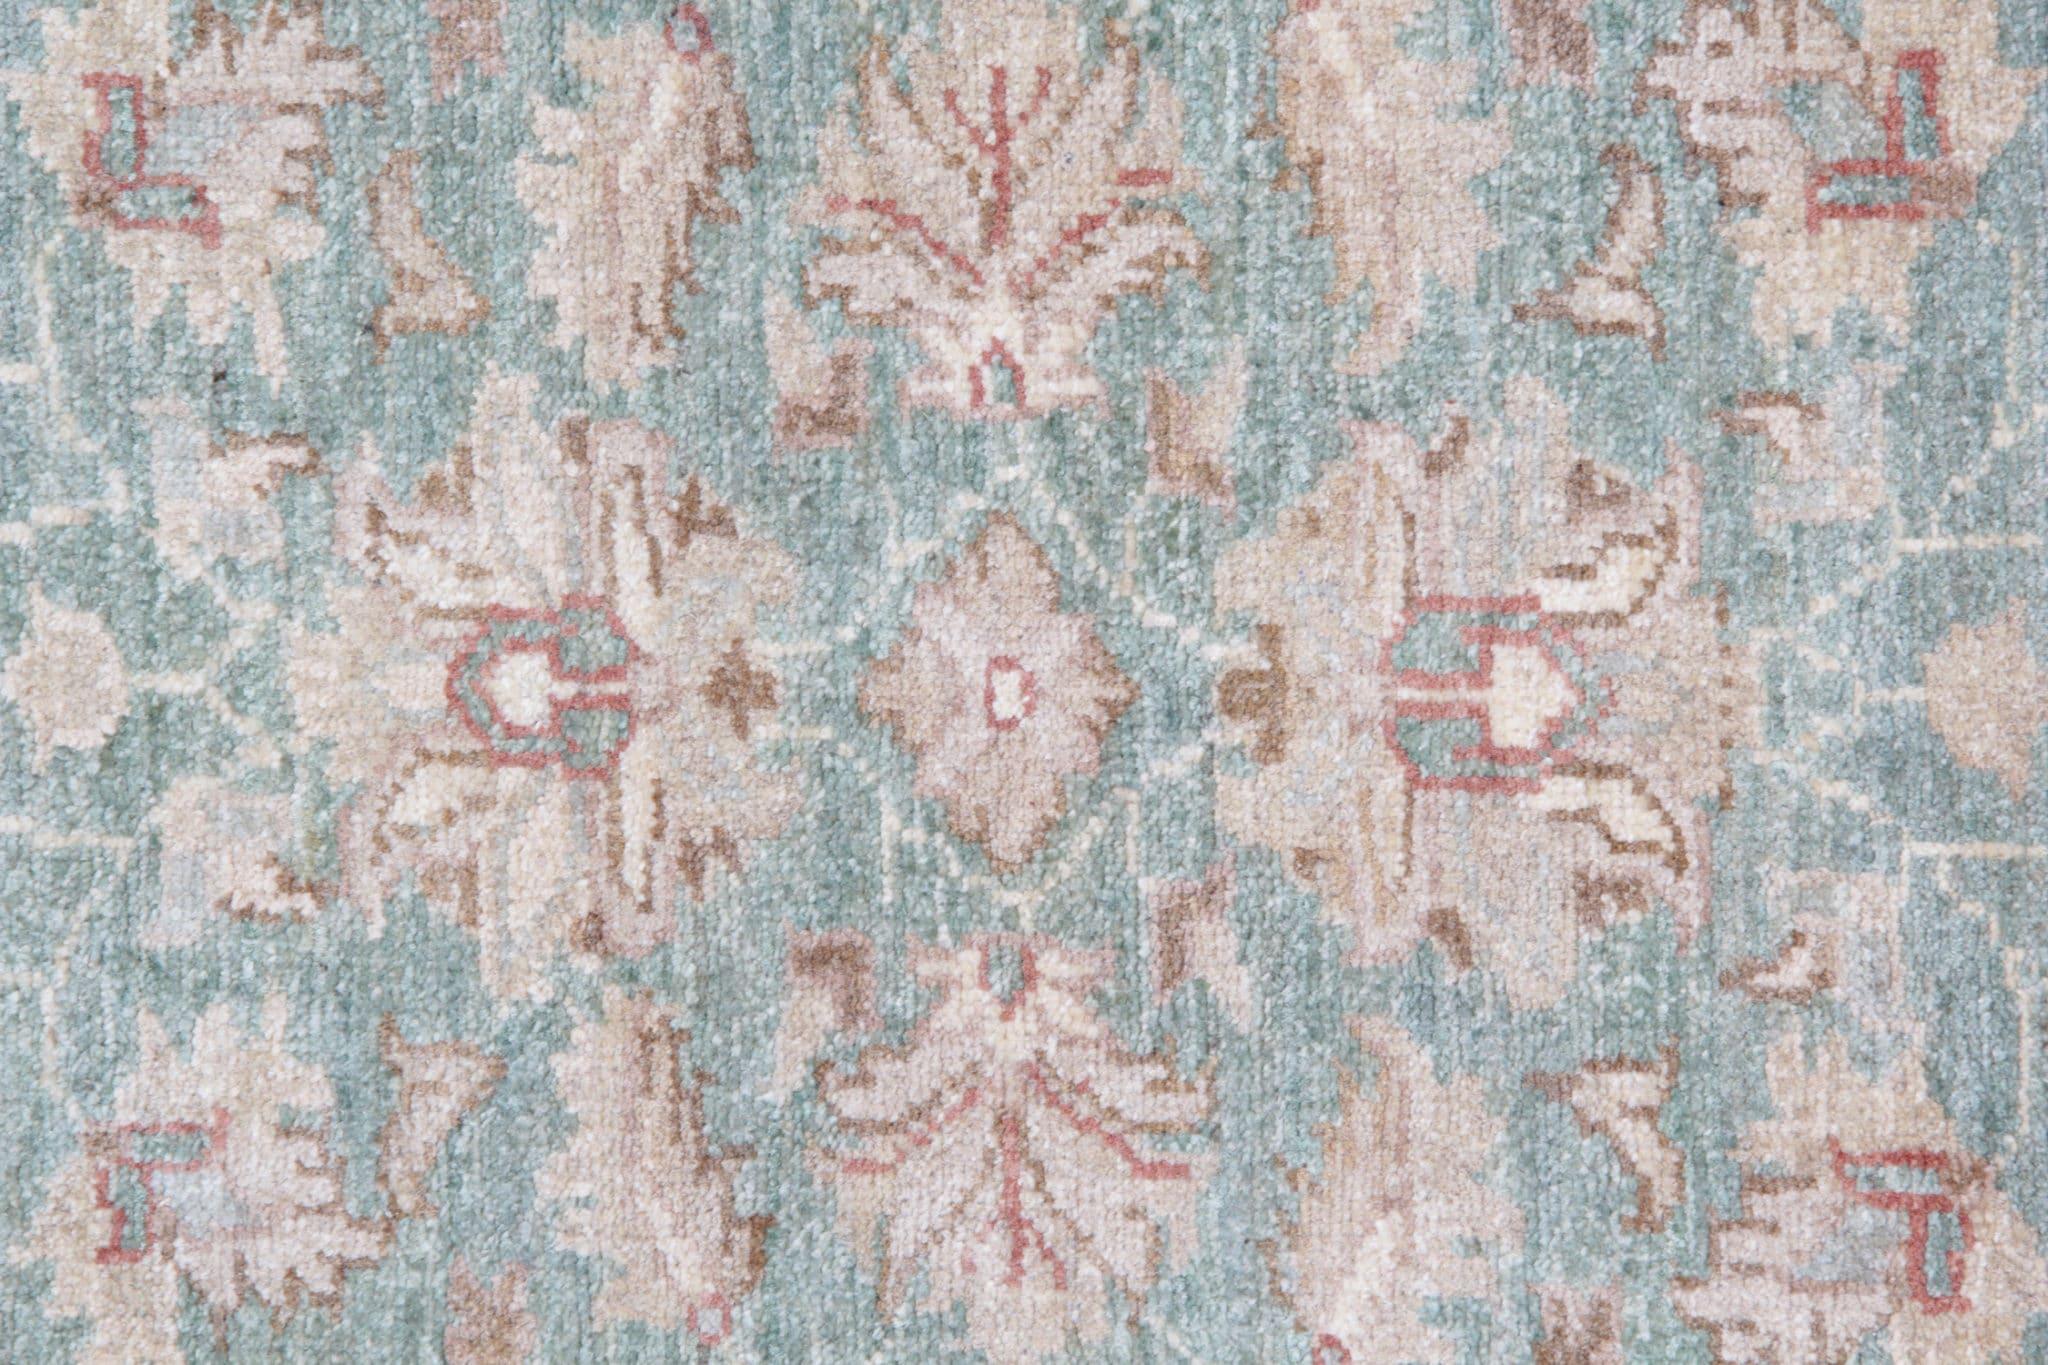 Erhöhen Sie Ihr Heimdekor mit diesem exquisiten cremegrünen Vintage-Teppich, der sorgfältig von Hand geknüpft wurde. Dieses zeitlose Kleidungsstück aus einer hochwertigen Woll- und Baumwollmischung strahlt Eleganz und Charme aus und verbindet